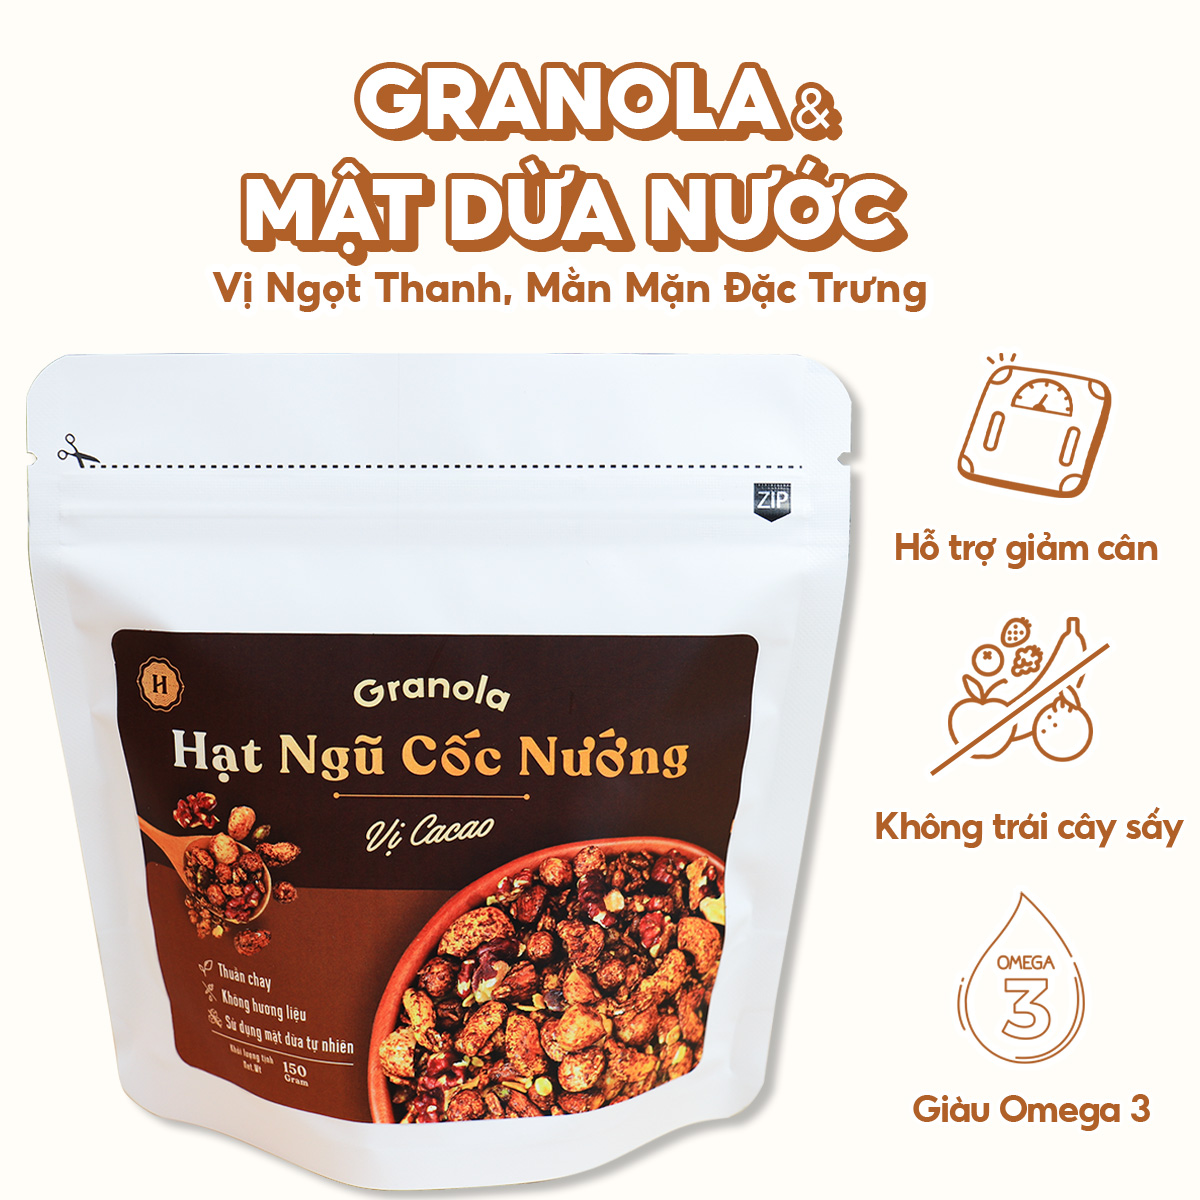 Granola nướng giòn tan - Vị Cacao túi 150g - Dùng mật dừa nước, 0 trái cây sấy, GI thấp - Hạt ngũ cốc giảm cân - HeydayCacao